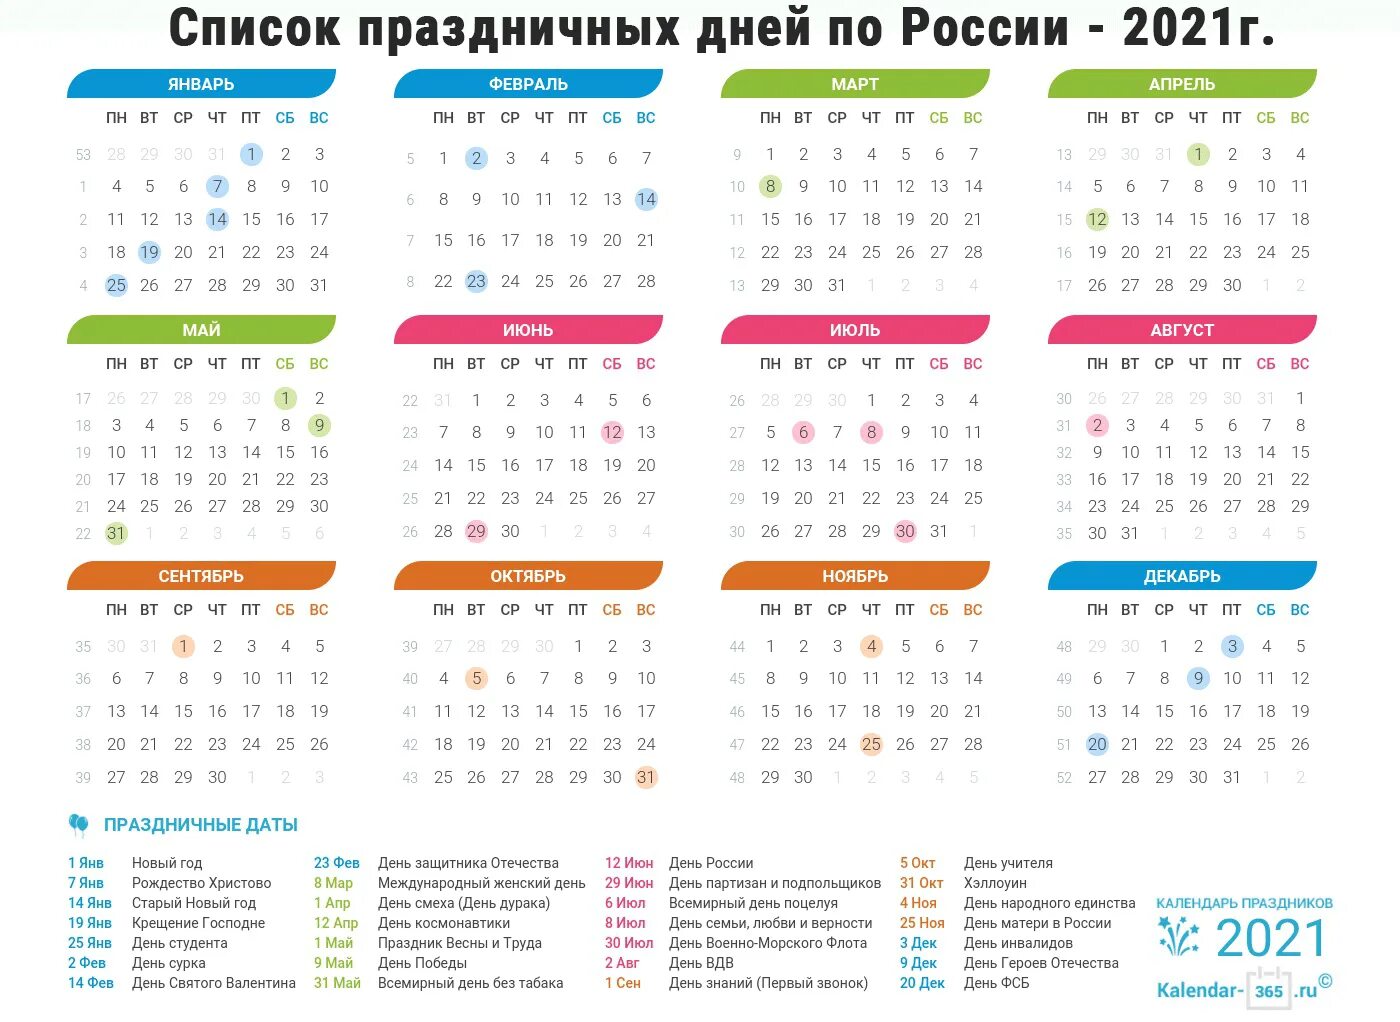 Выходные дни в мае в казахстане. Производ календ 2022. Календарь праздников на 2021 год в России. Праздники 2021 календарь праздничных дней России на 2021. Выходные и праздничные дни в 2022 году в России.